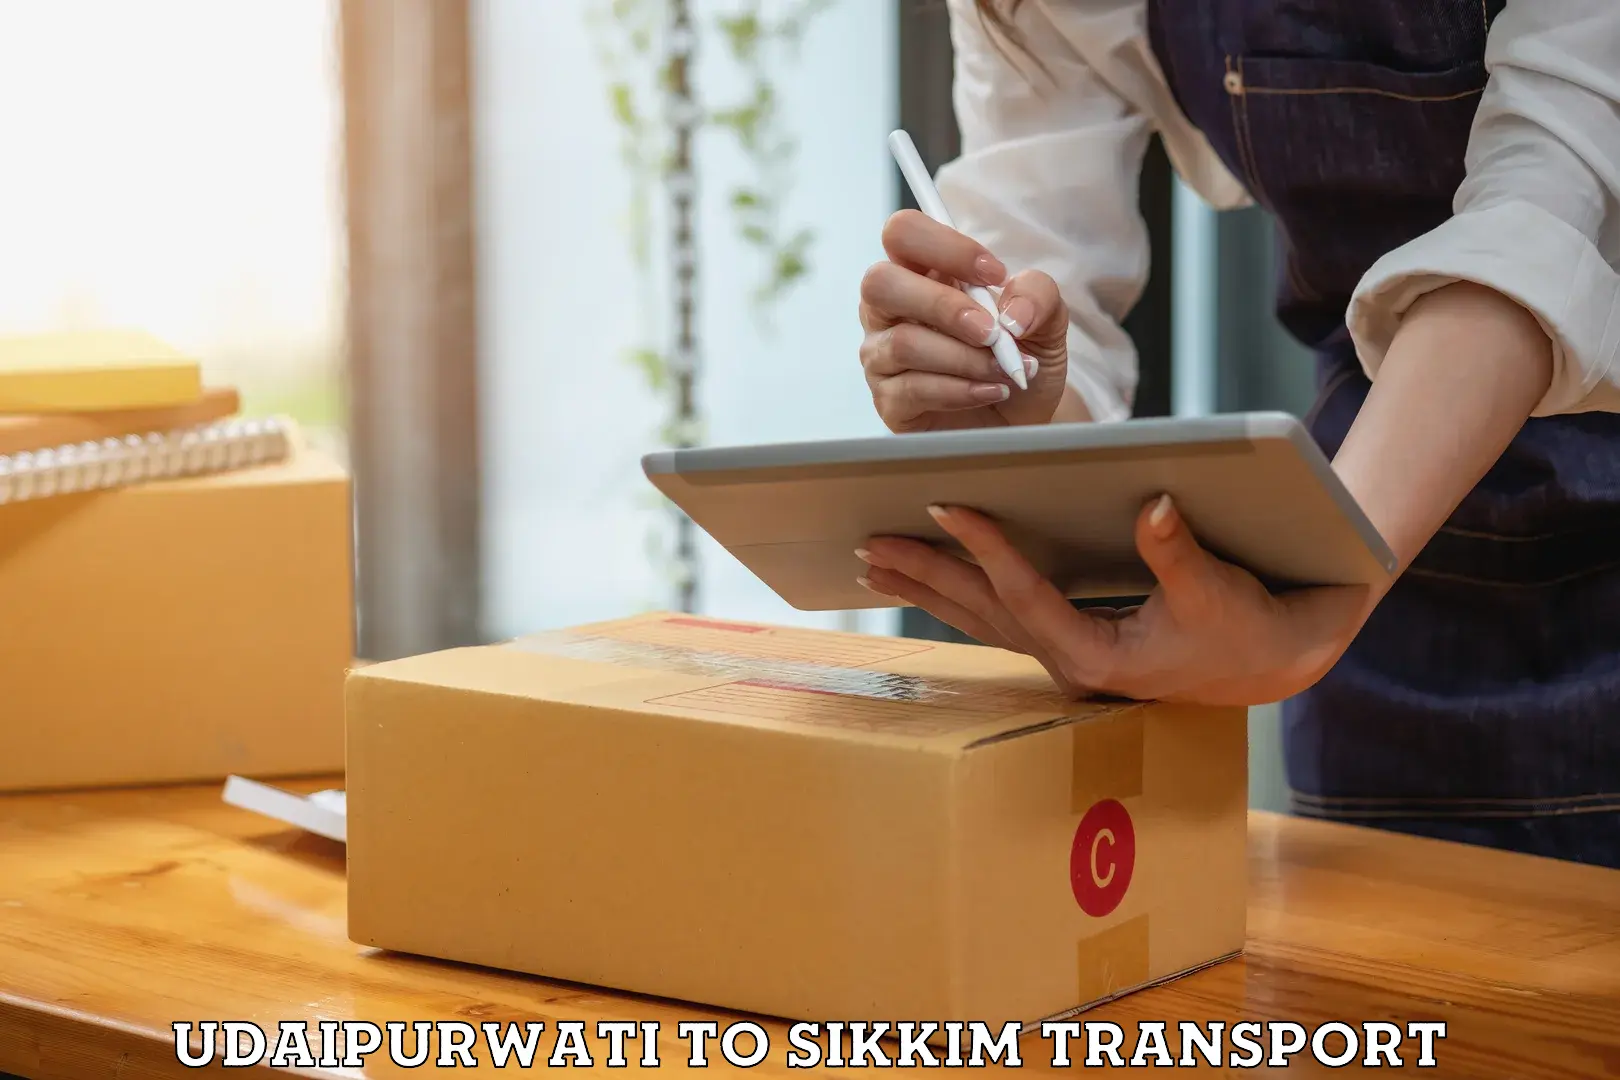 Air cargo transport services Udaipurwati to Sikkim